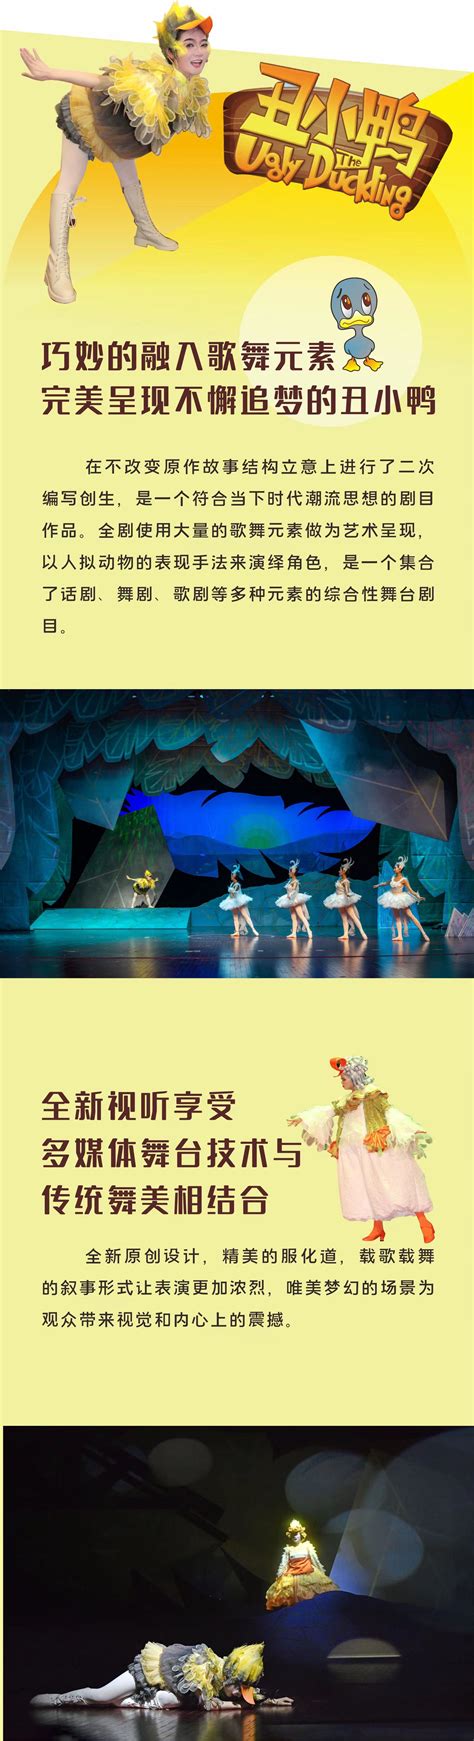 【北京】天恩演出· 大型奇幻音乐冒险童话剧《宇宙护卫队之钢甲霸王龙》